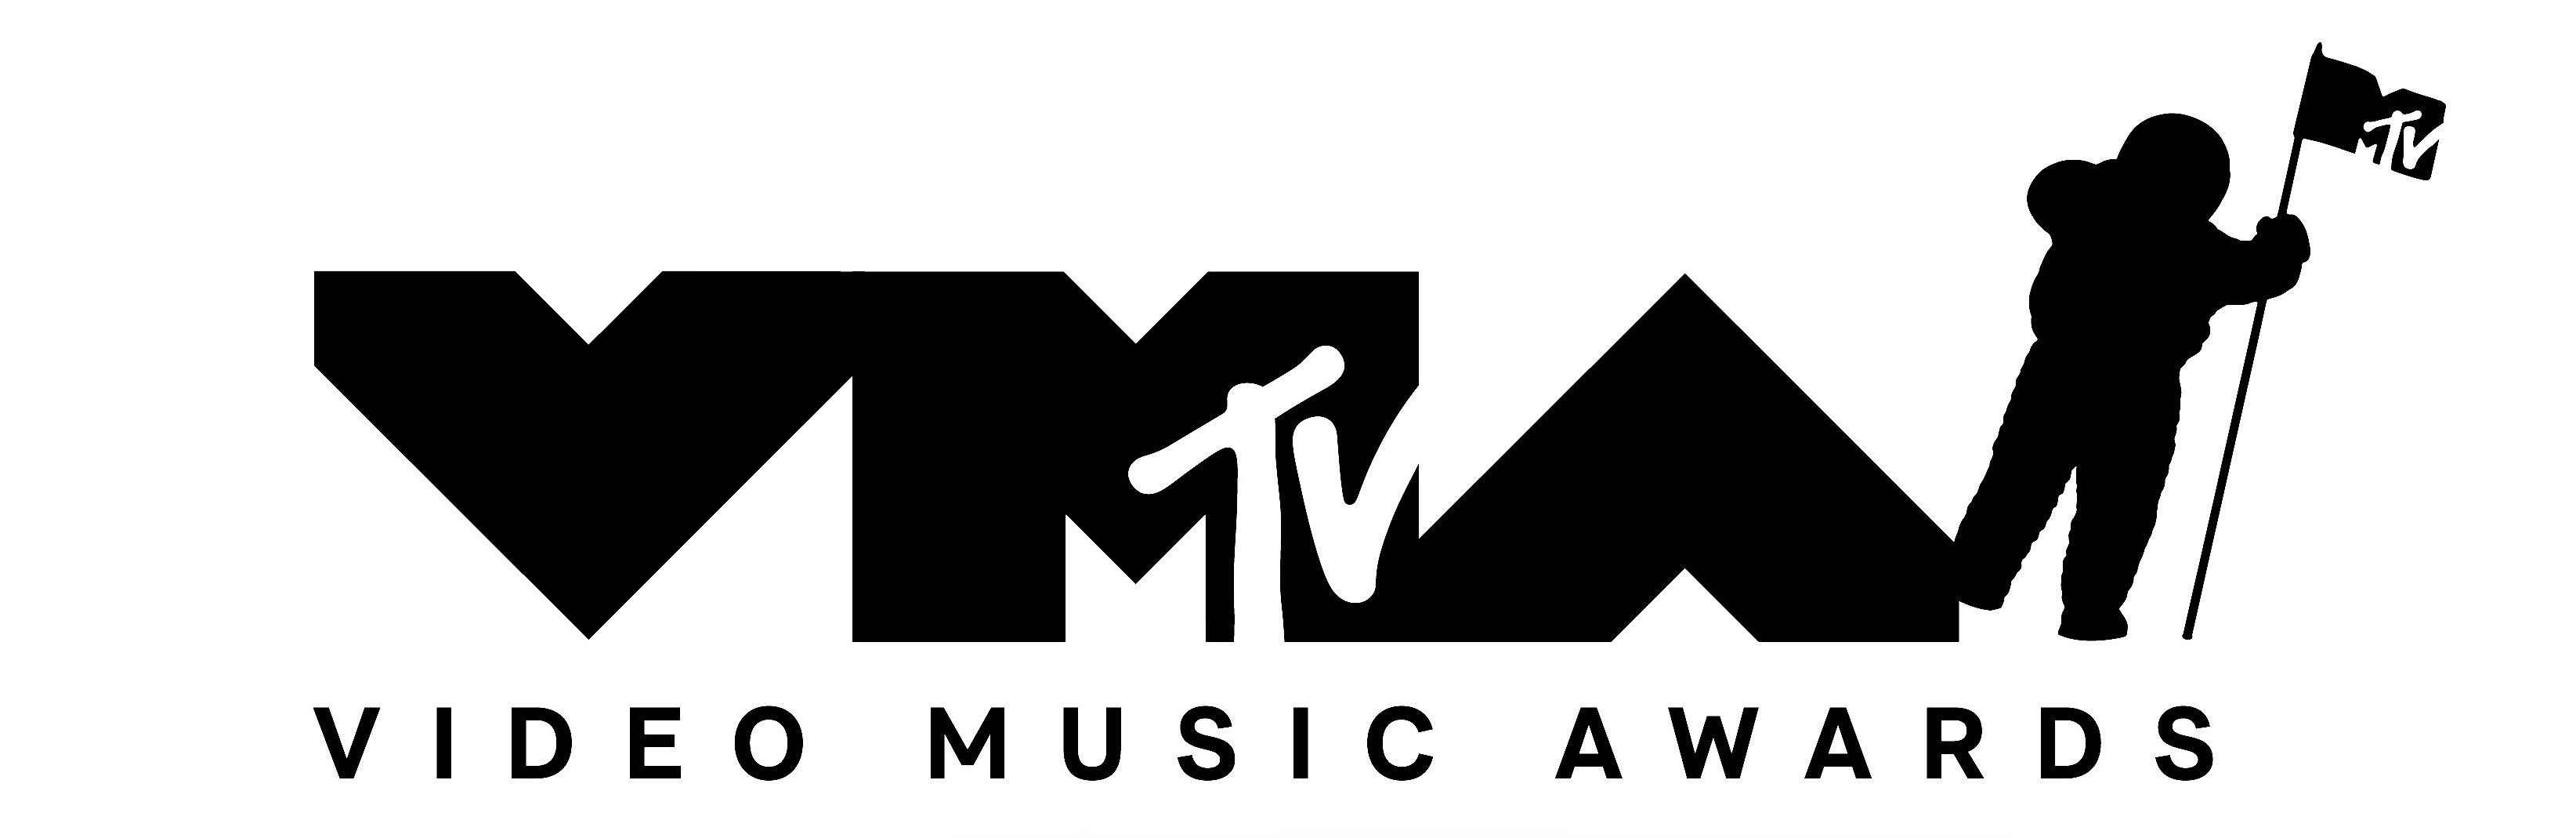 La cérémonie des MTV Video Music Awards 2022 diffusée le 29 août sur MTV - Découvrez la liste des nominés 